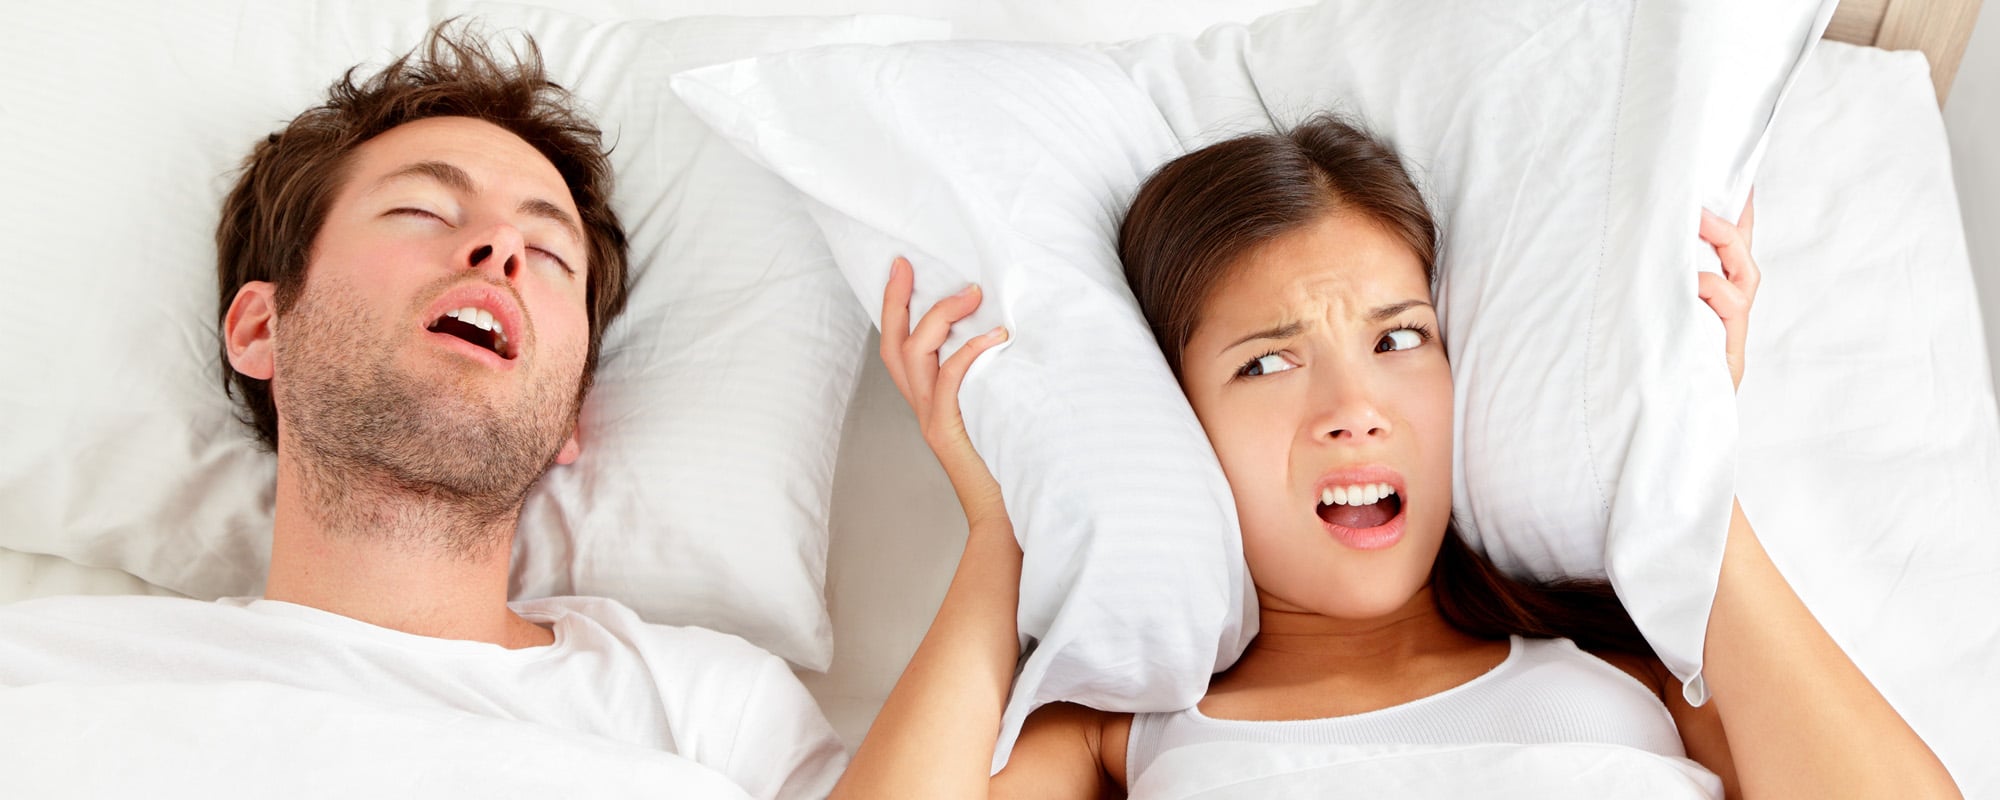 นอนกรนเป็นประจำ อันตรายจริงหรือ?